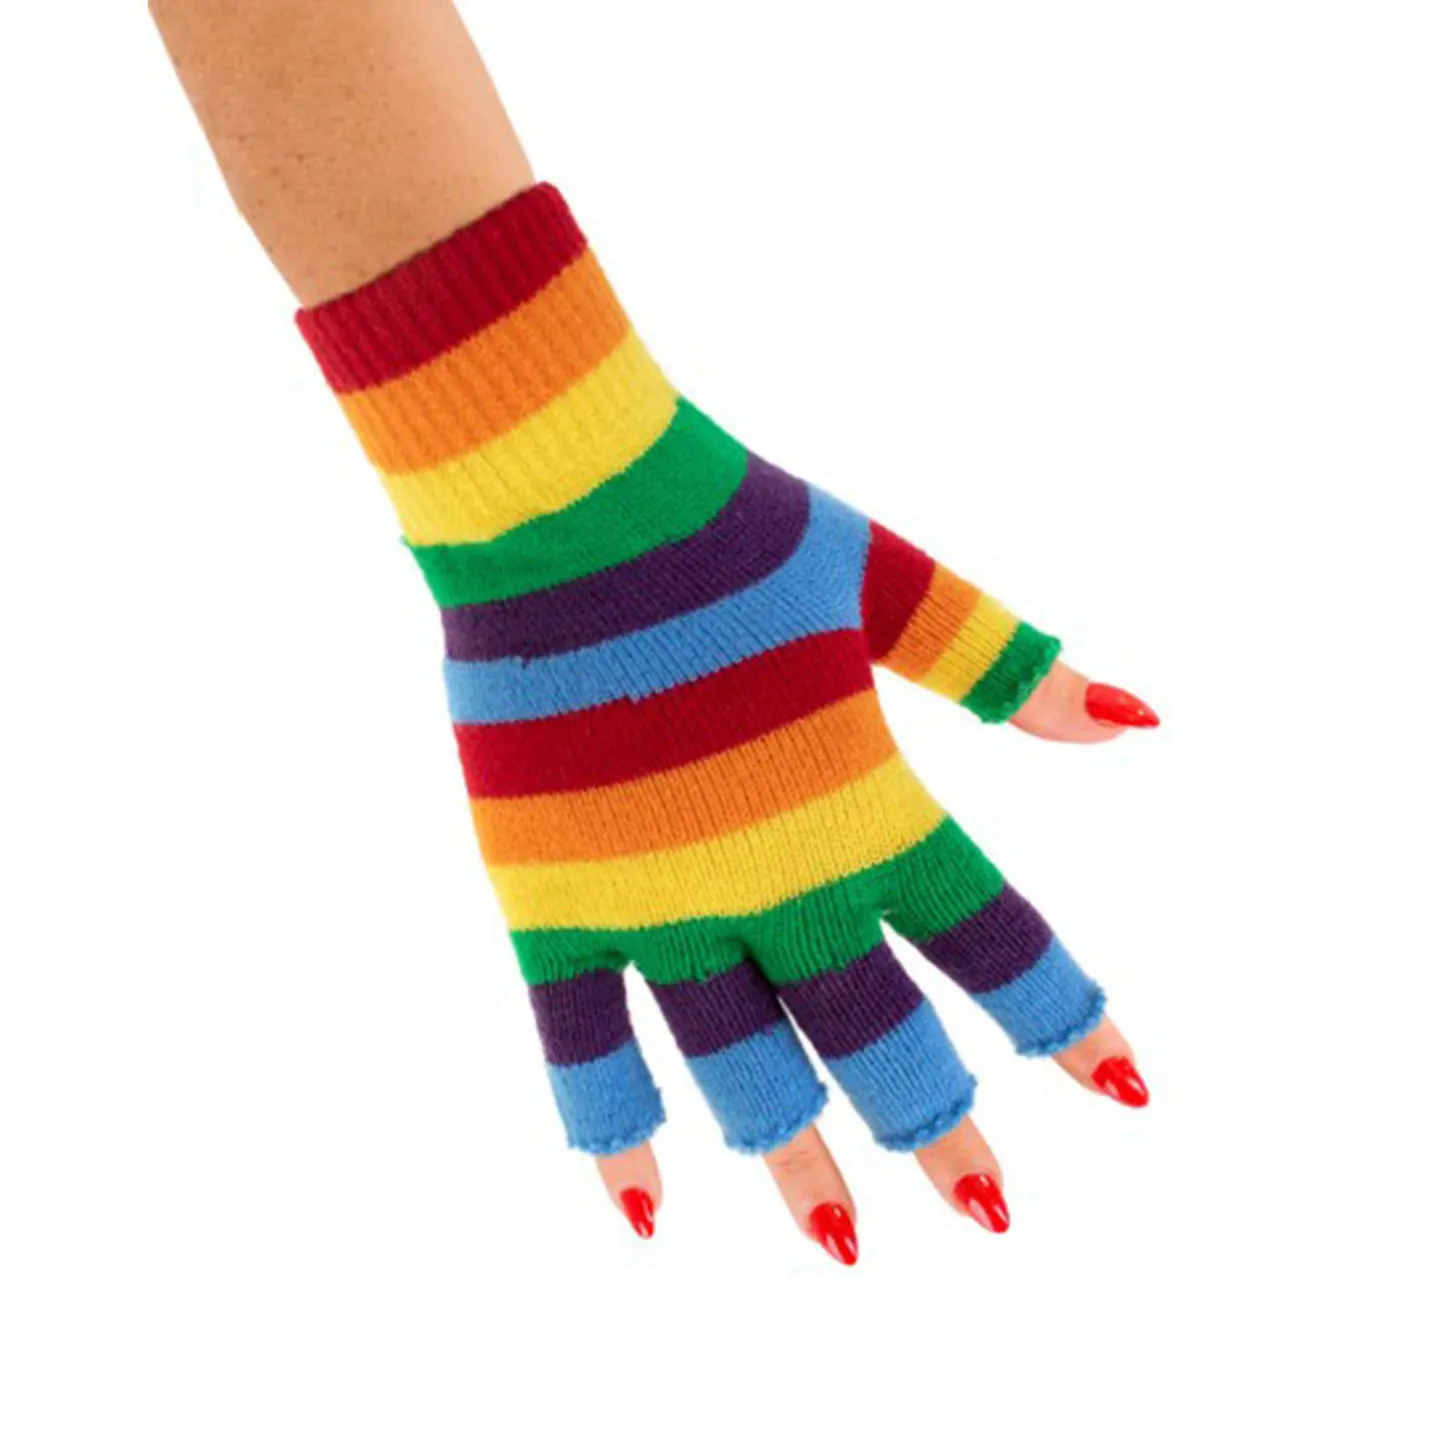 Handschoenen regenboog kopen.